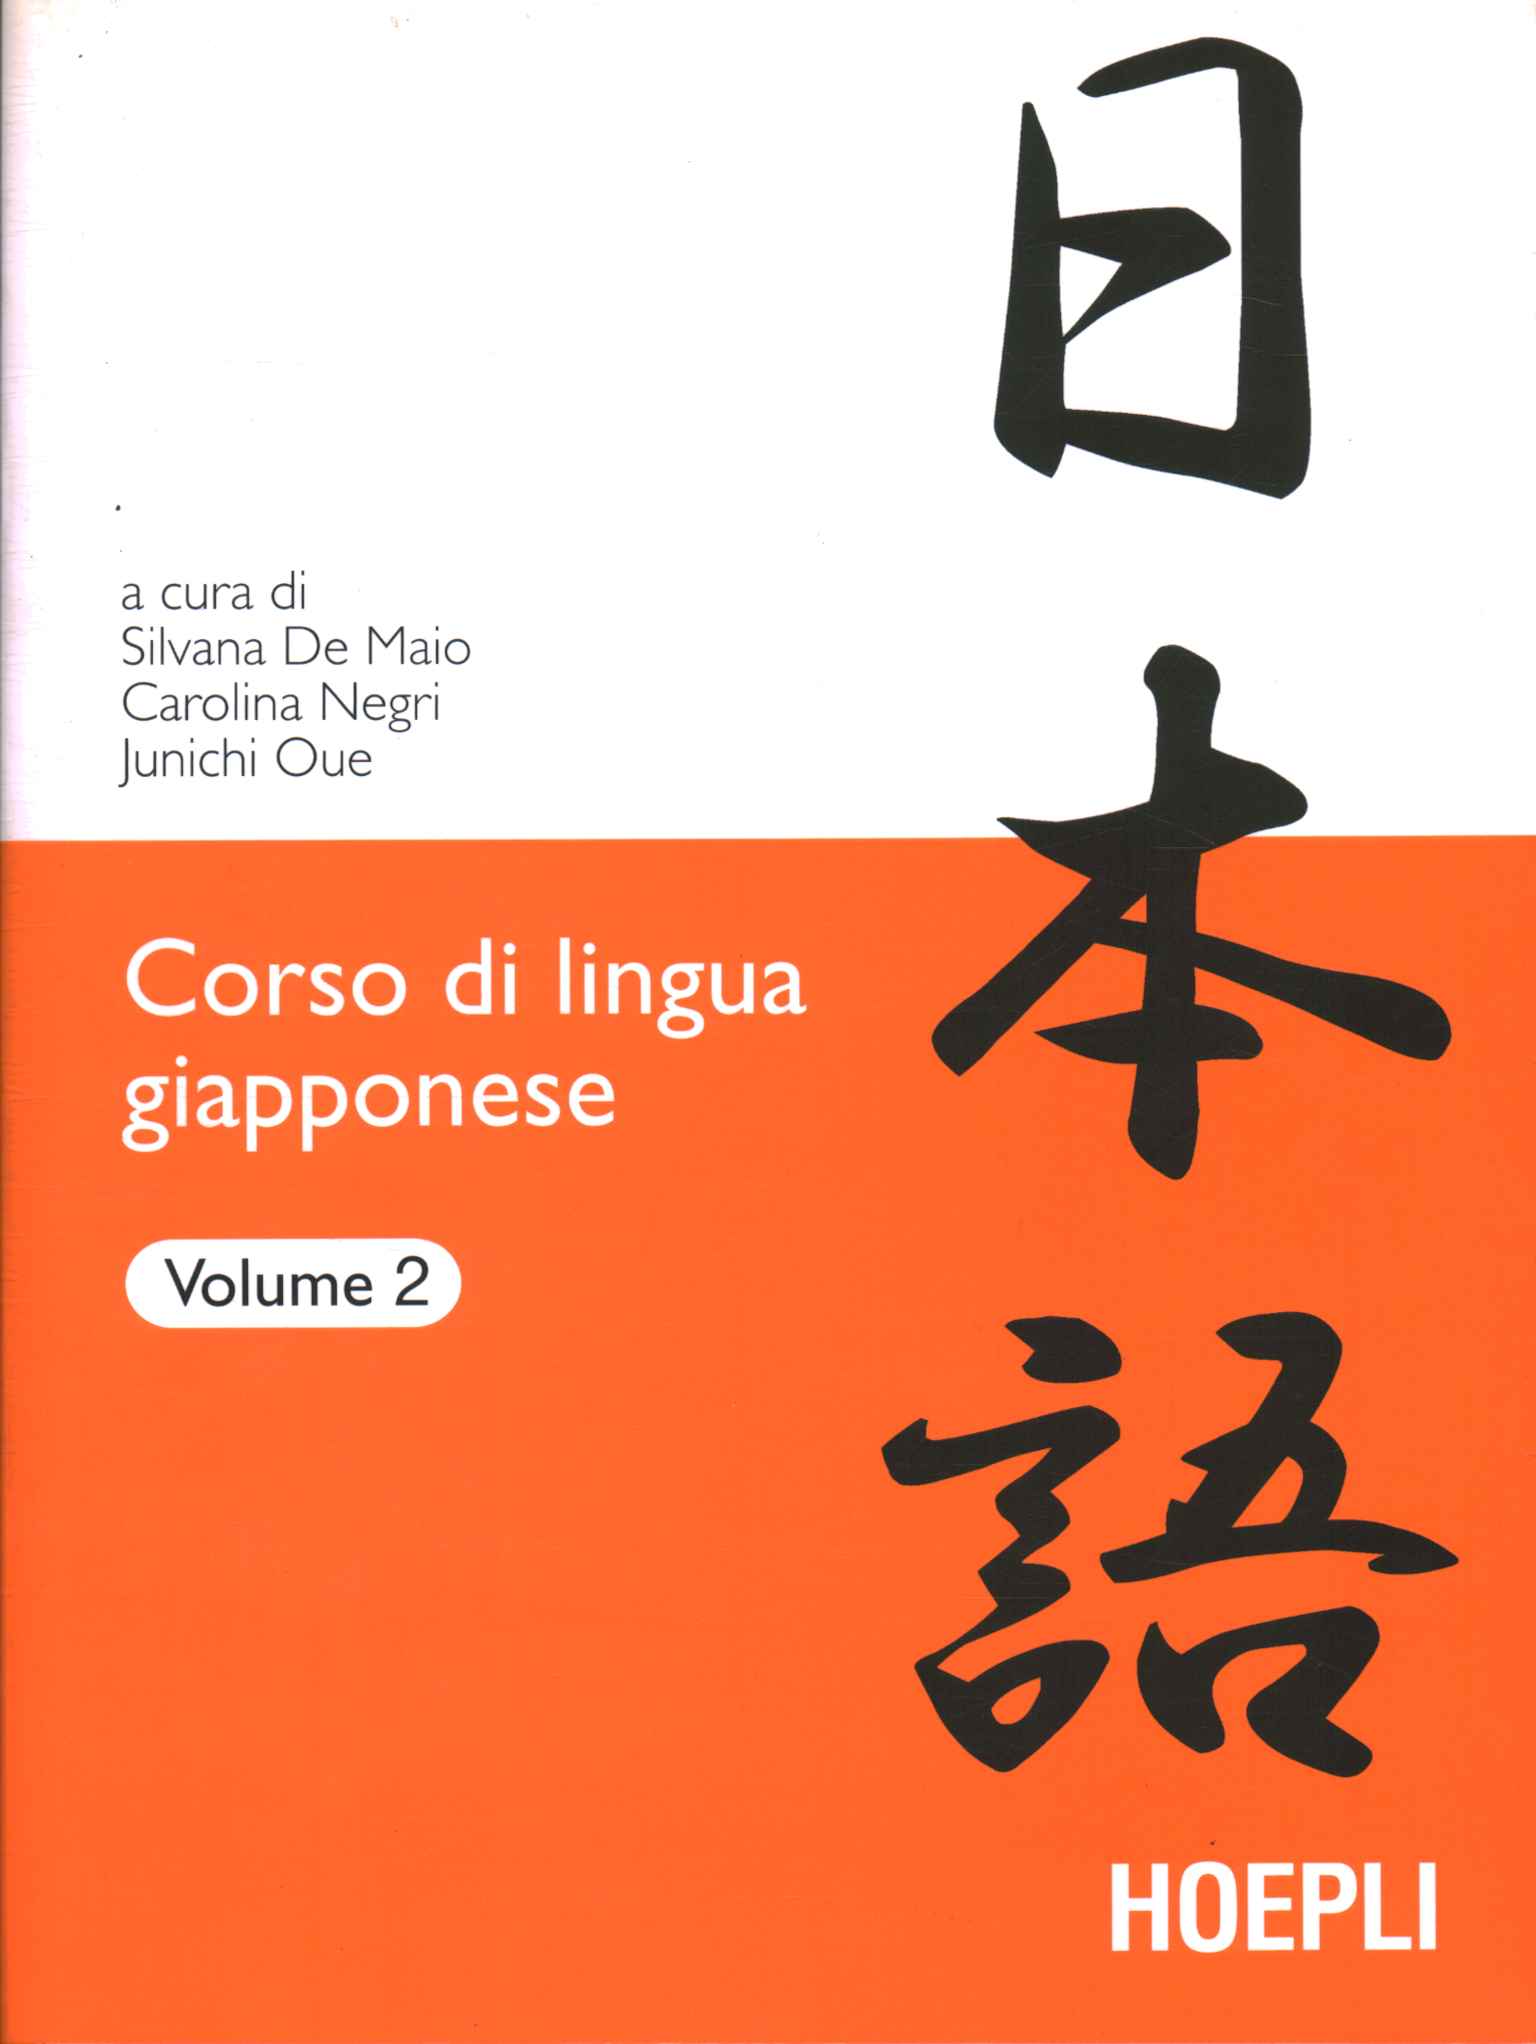 Curso de idioma japonés (volumen 2)